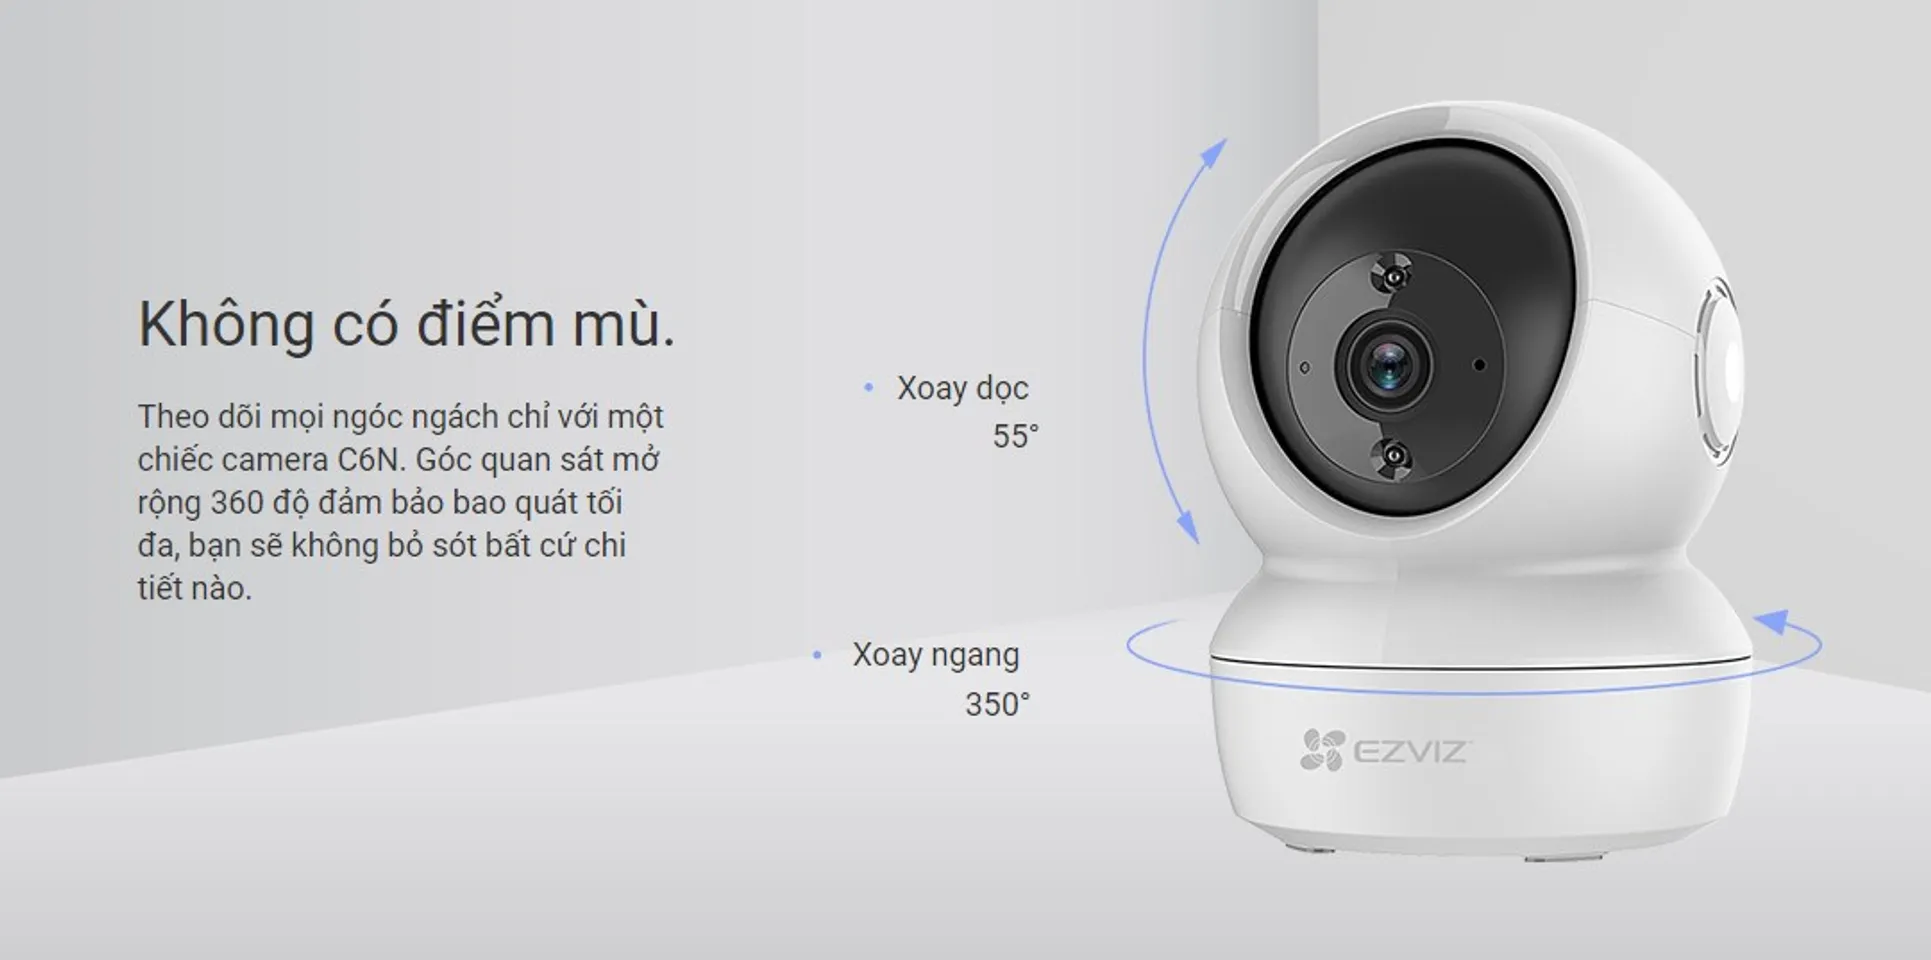 Camera wifi Ezviz C6N 4Mp 2K xoay 360 độ, đàm thoại 2 chiều